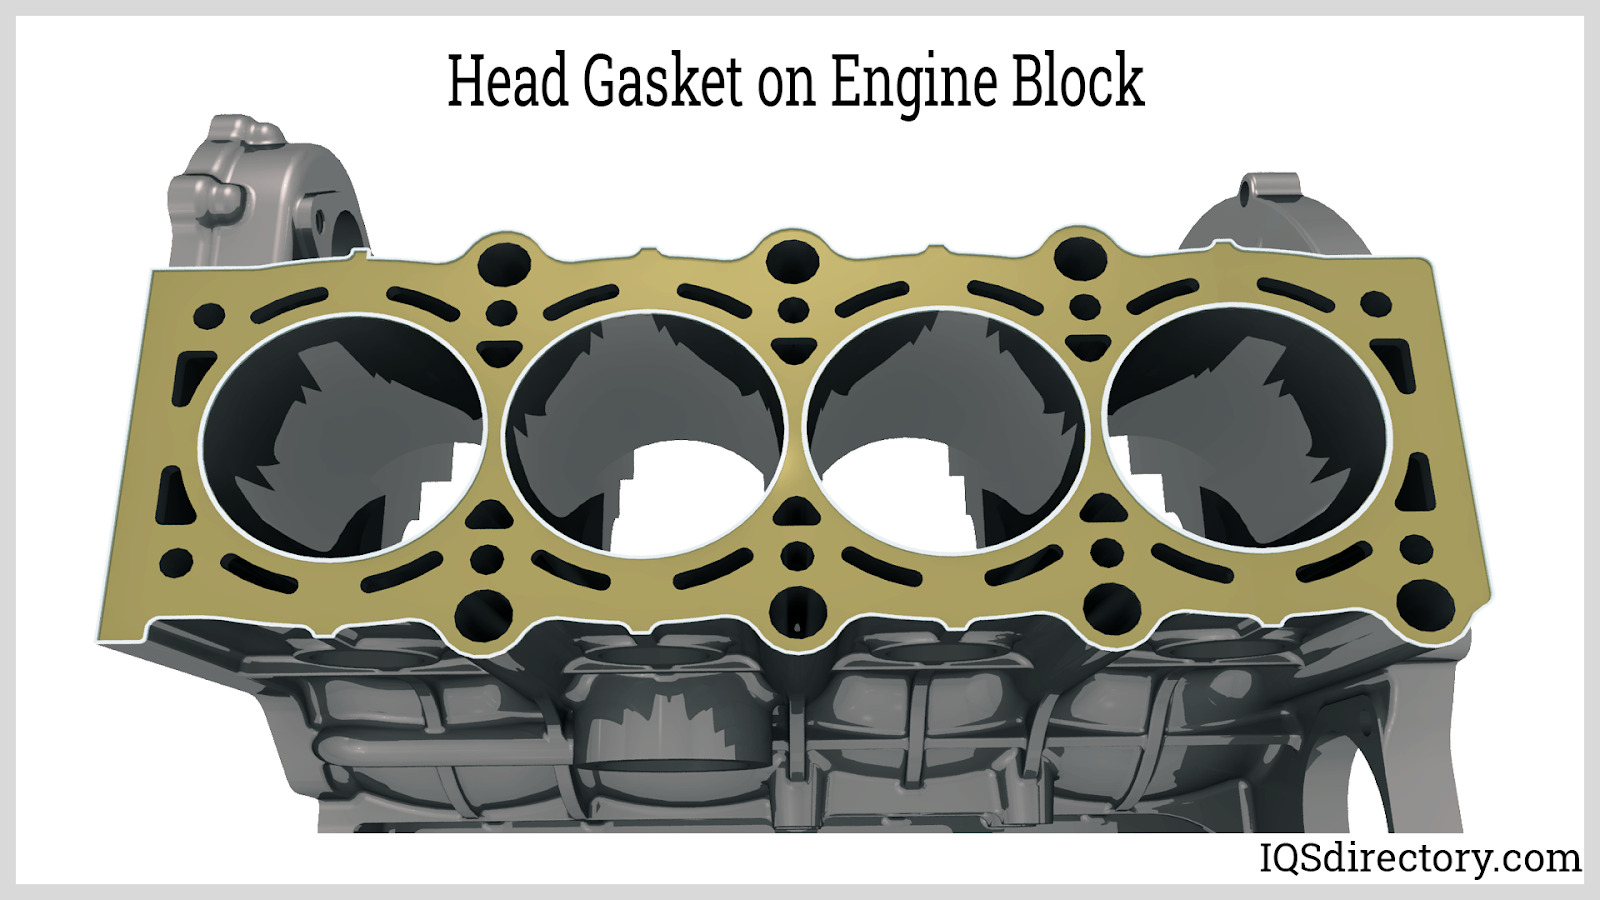  Head Gasket on Engine Block